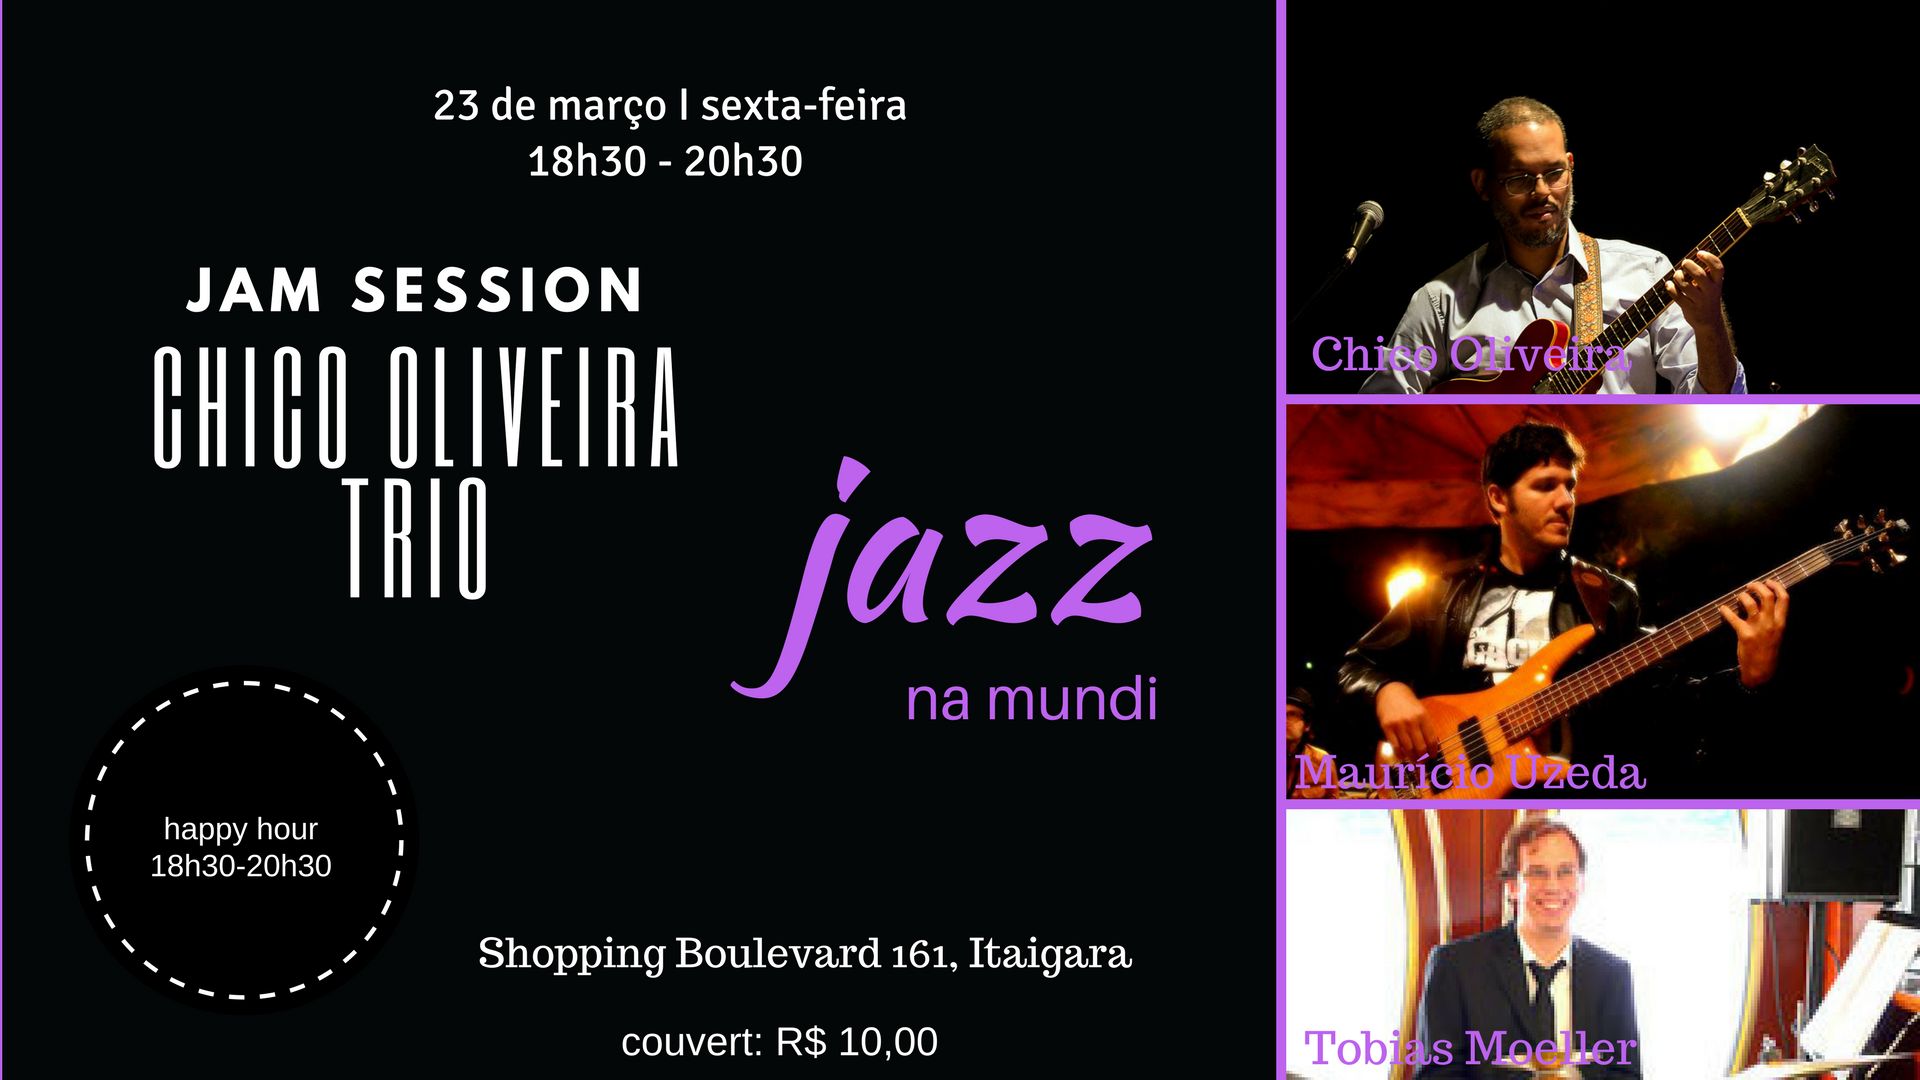 Chico Oliveira Trio - JAZZ na MUNDI 